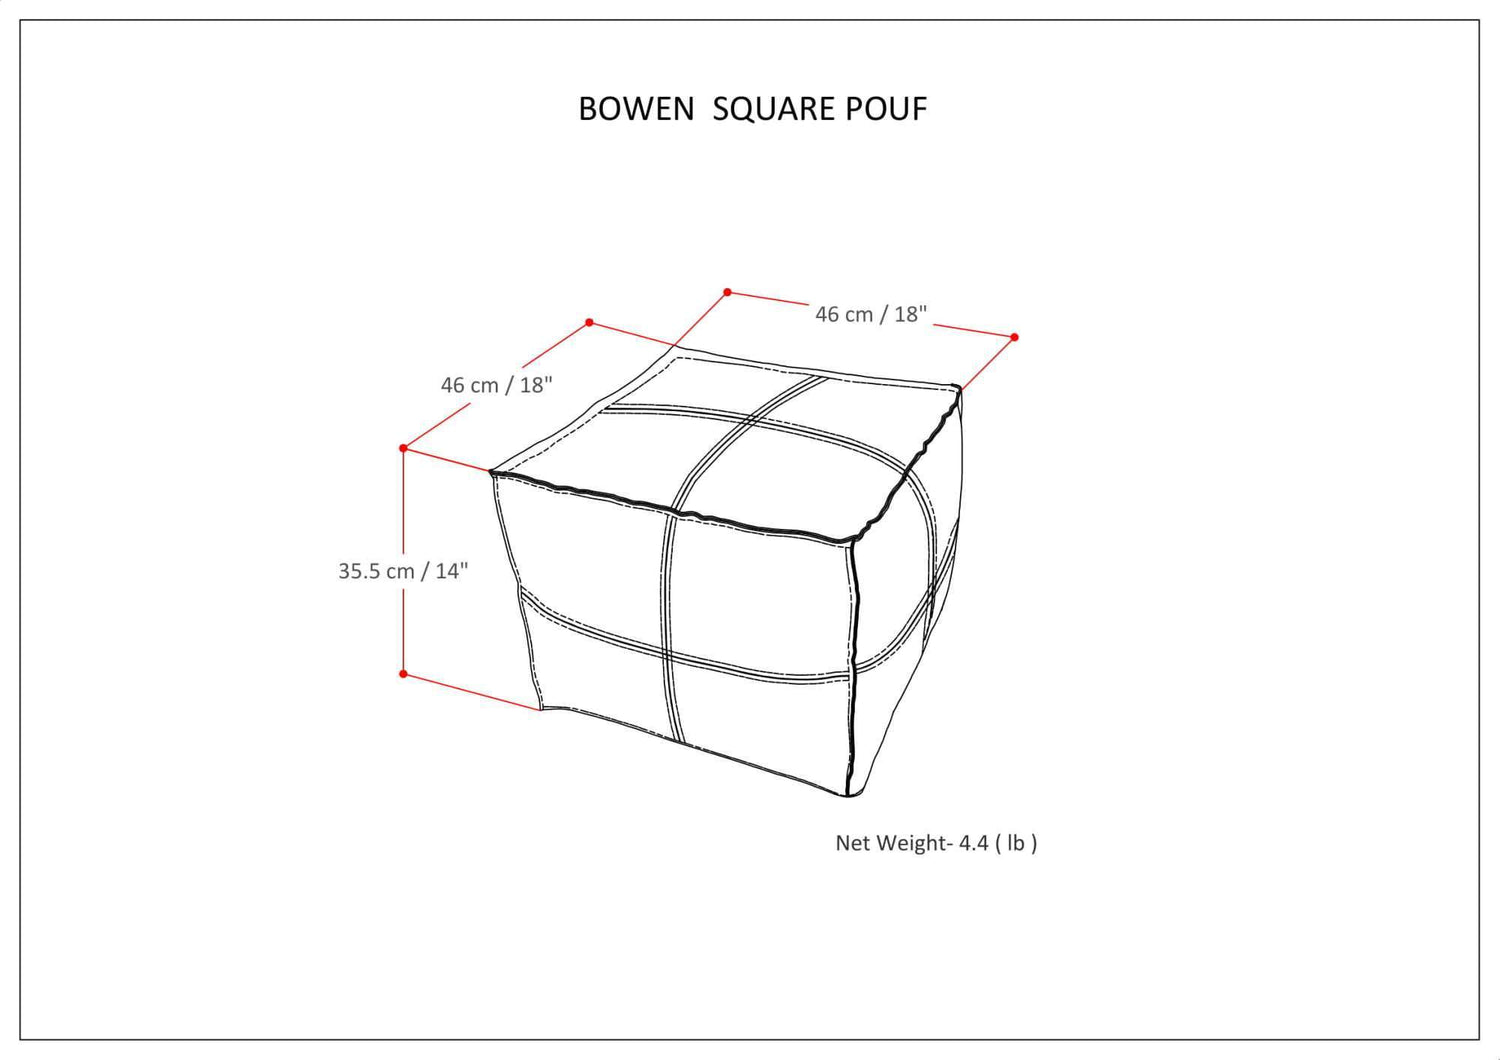 Bowen Square Pouf